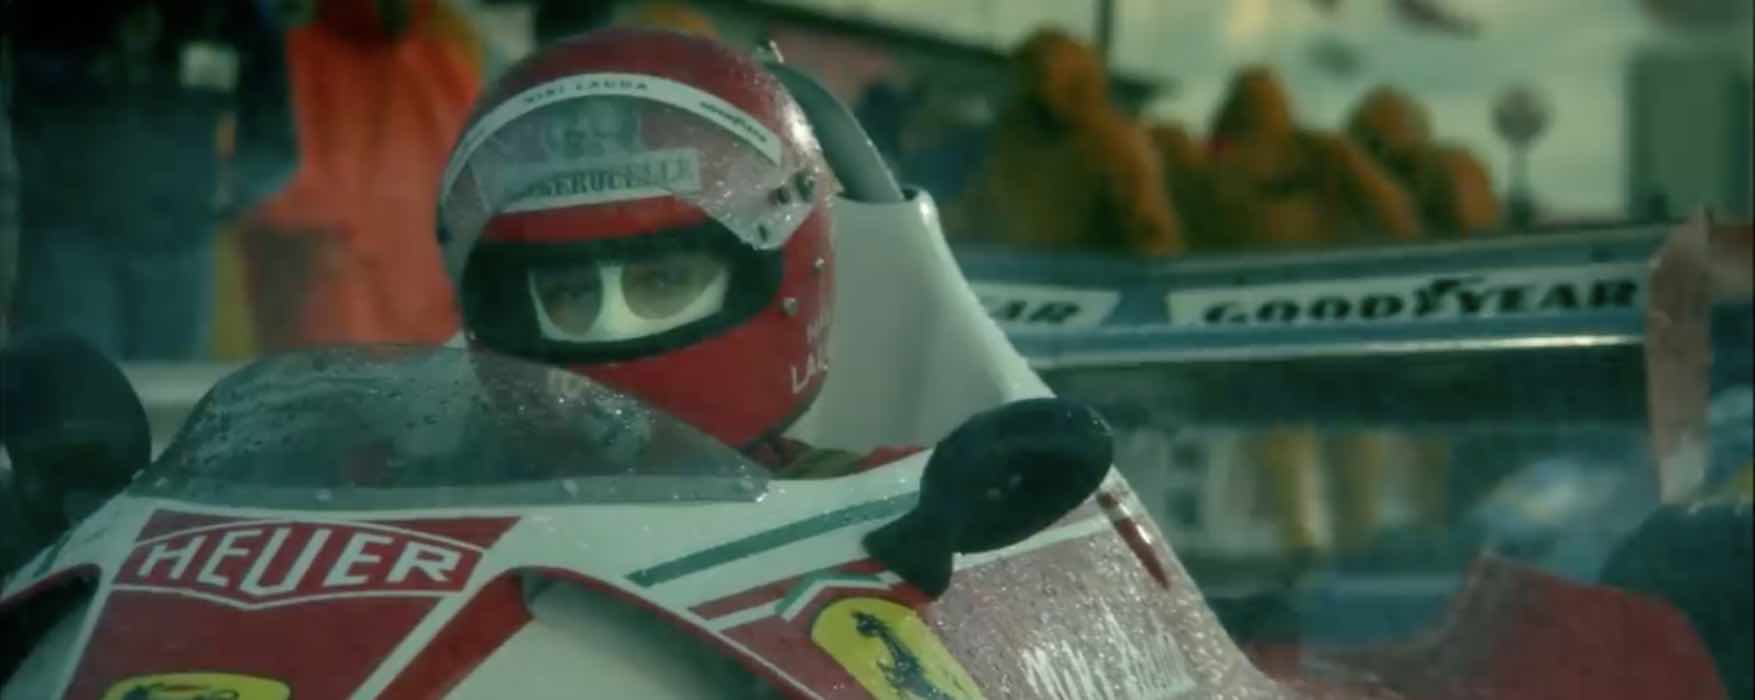 Rai Movie | Rush: trama - cast film sulla rivalità James Hunt - Niki Lauda